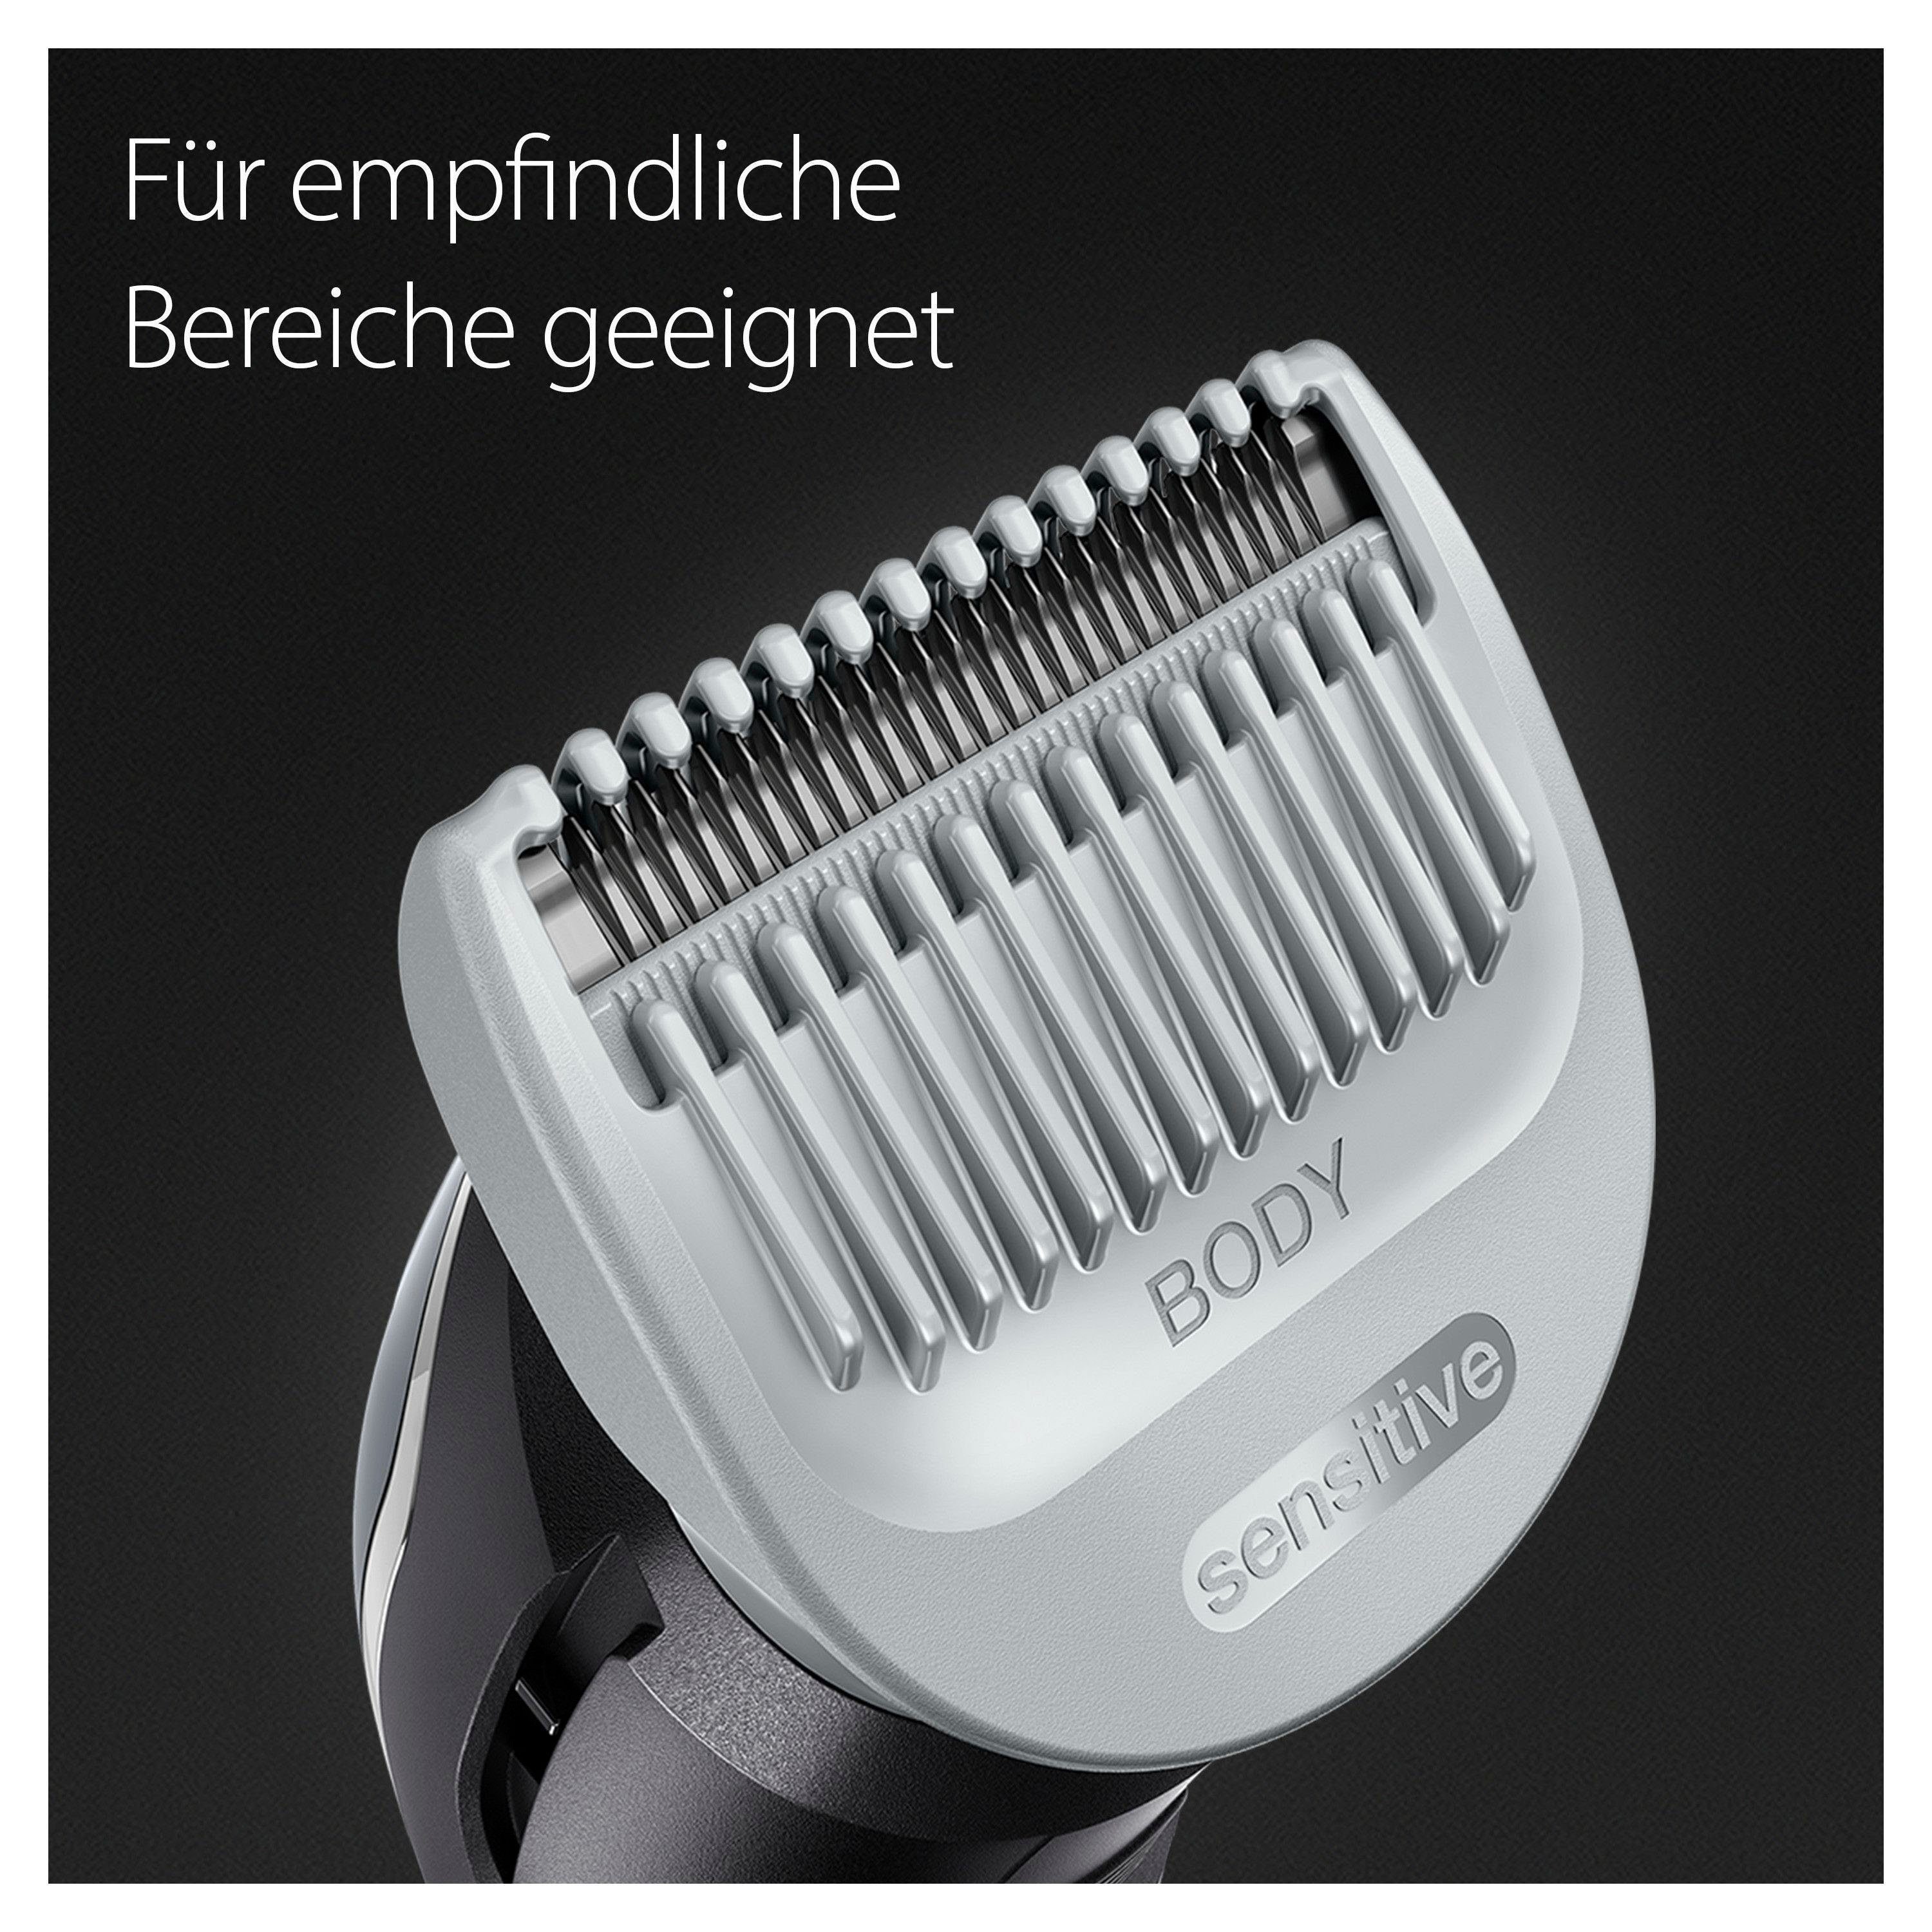 Bodygroomer Haarschneider Abwaschbar Braun SkinShield-Technologie, BG3340,